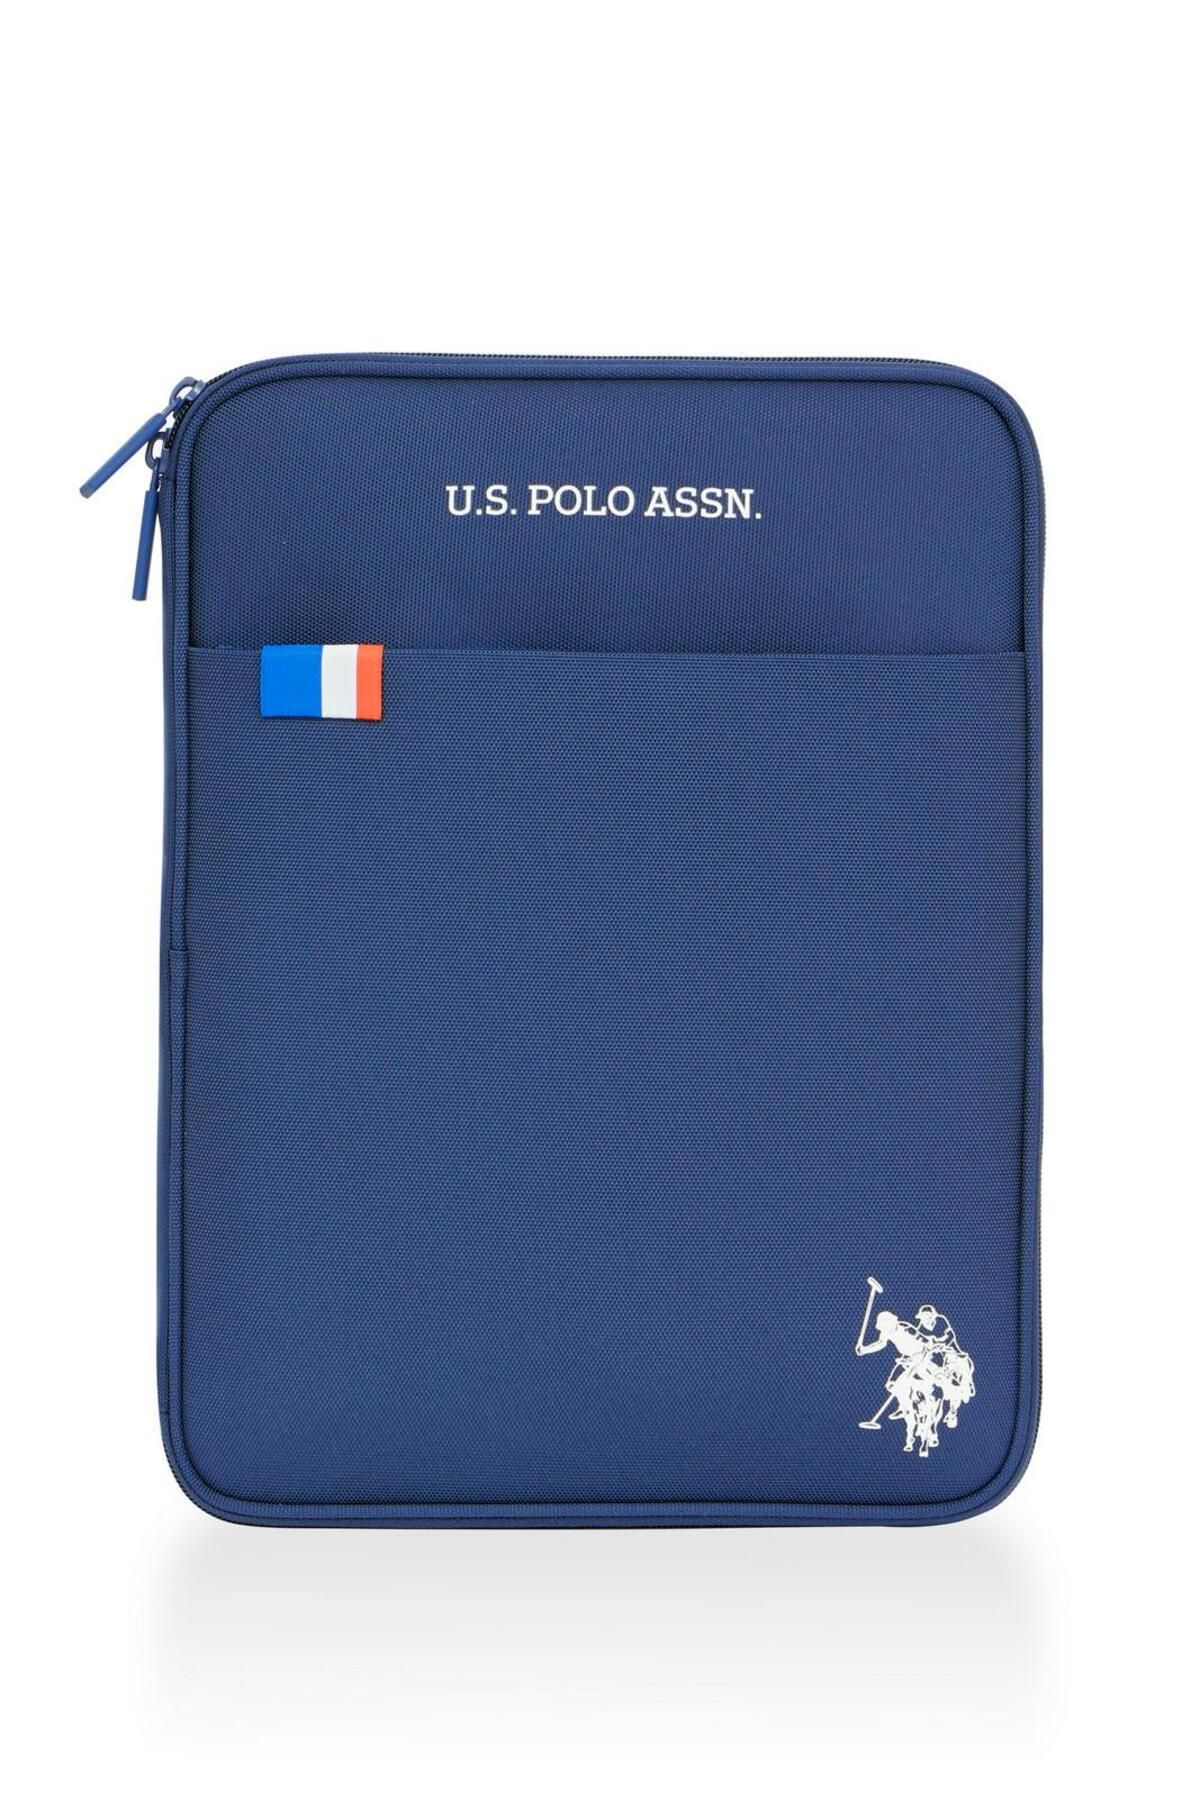 U.S. Polo Assn. Laptop Ve Evrak Çantası Plevr2370102